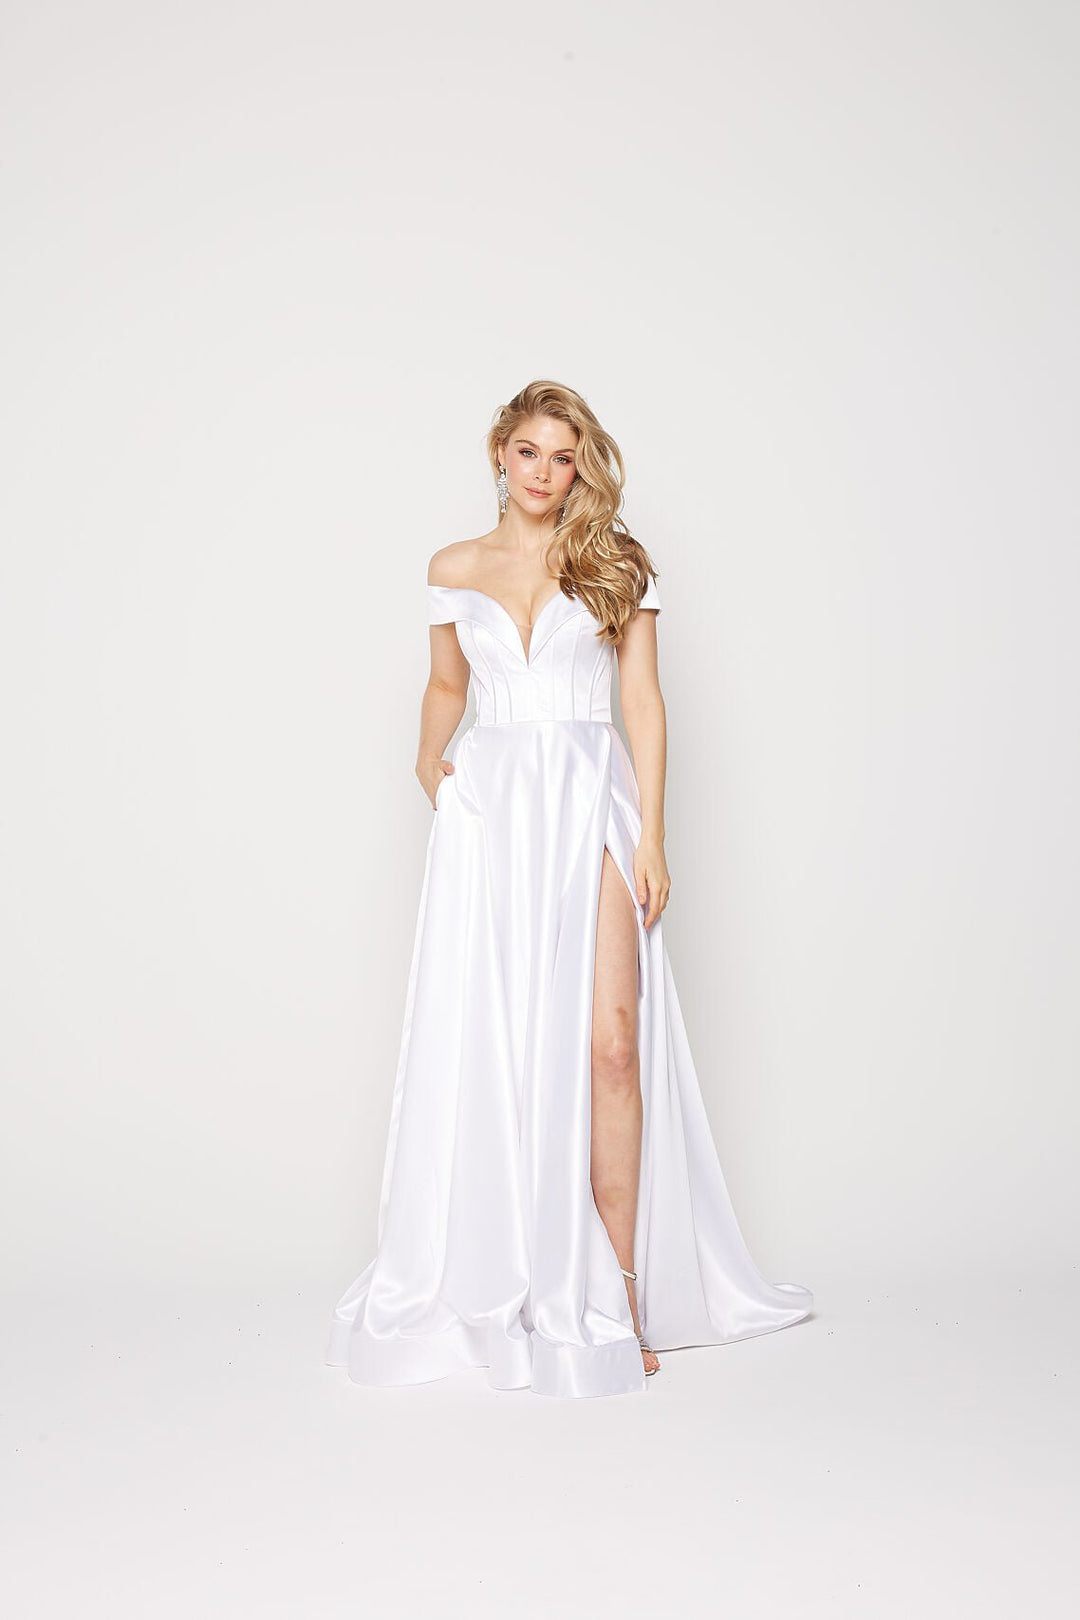 Willa Dress in White by Tania Olsen PO2311 - ElissaJay Boutique